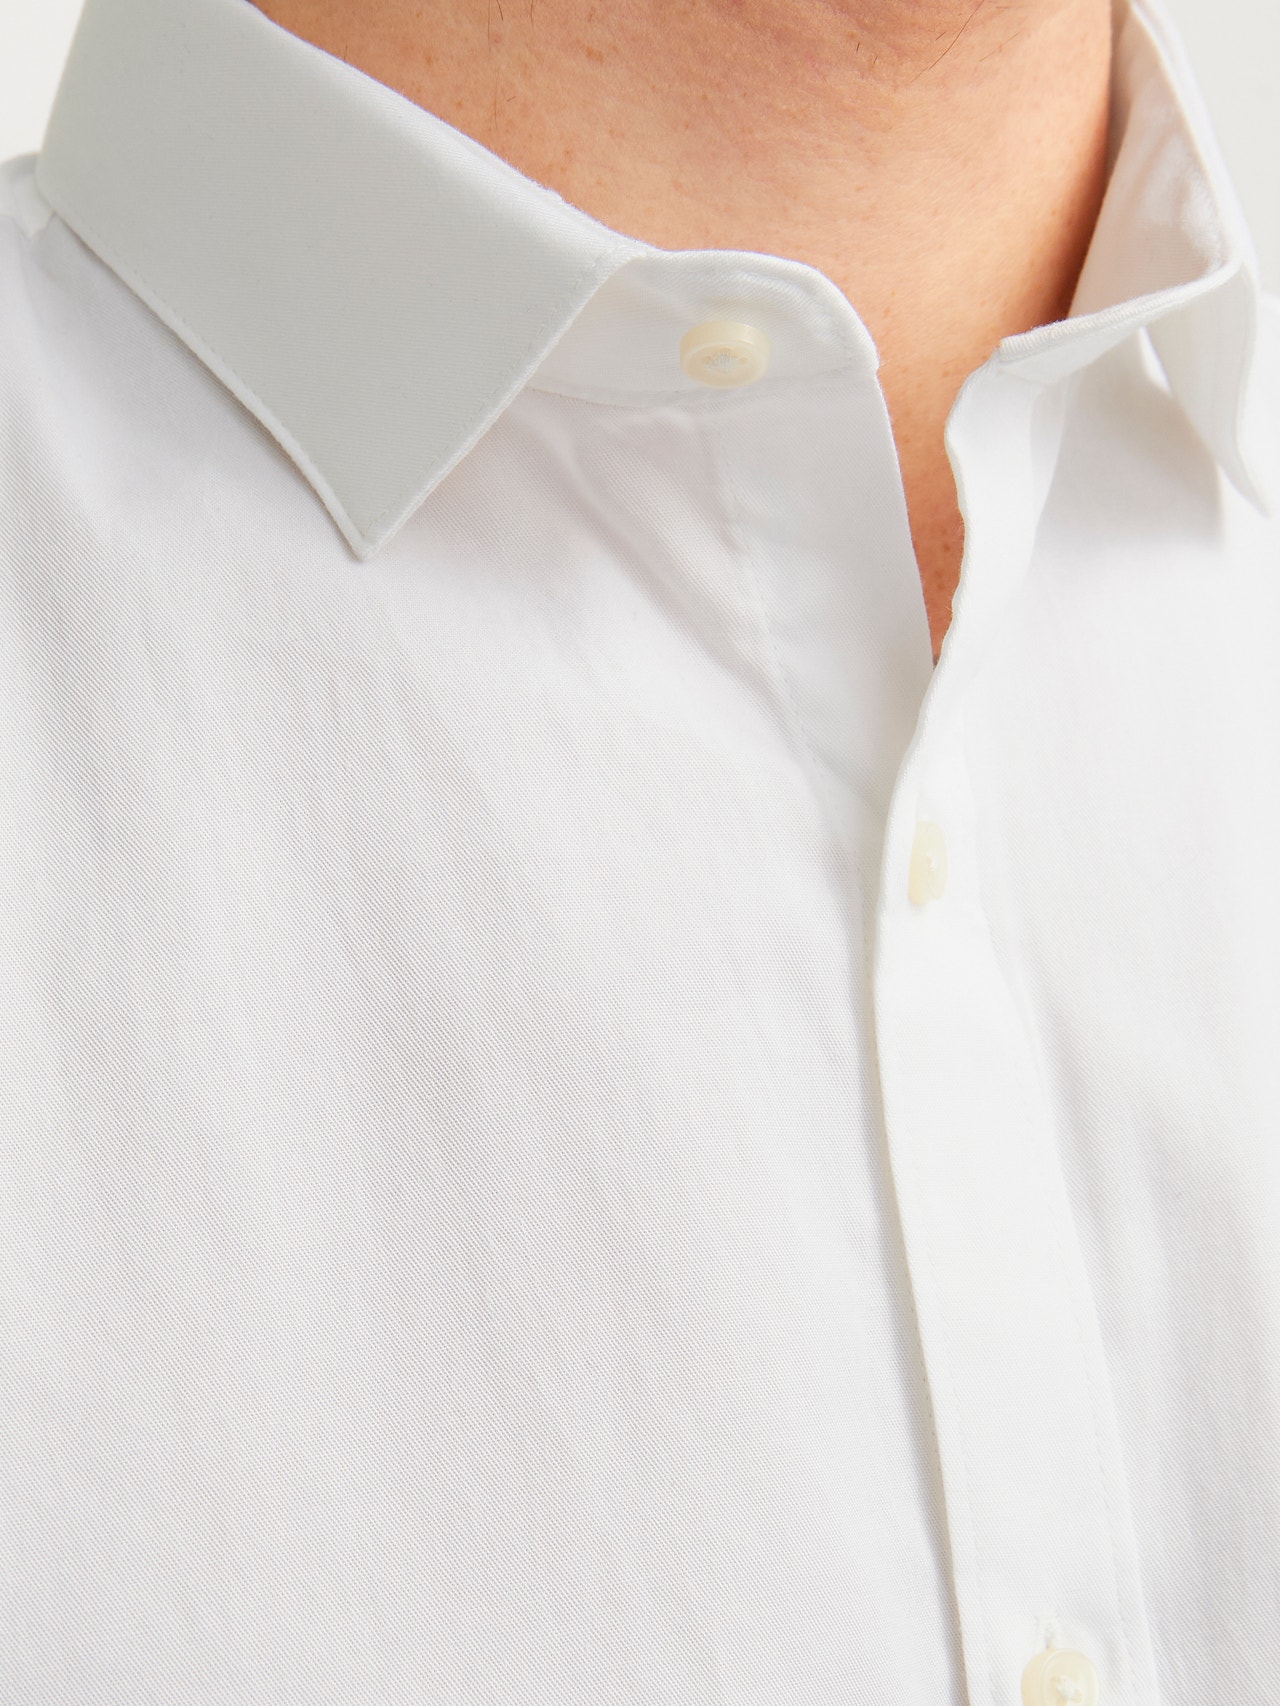 Jack & Jones Slim Fit Oficialūs marškiniai -White - 12201905